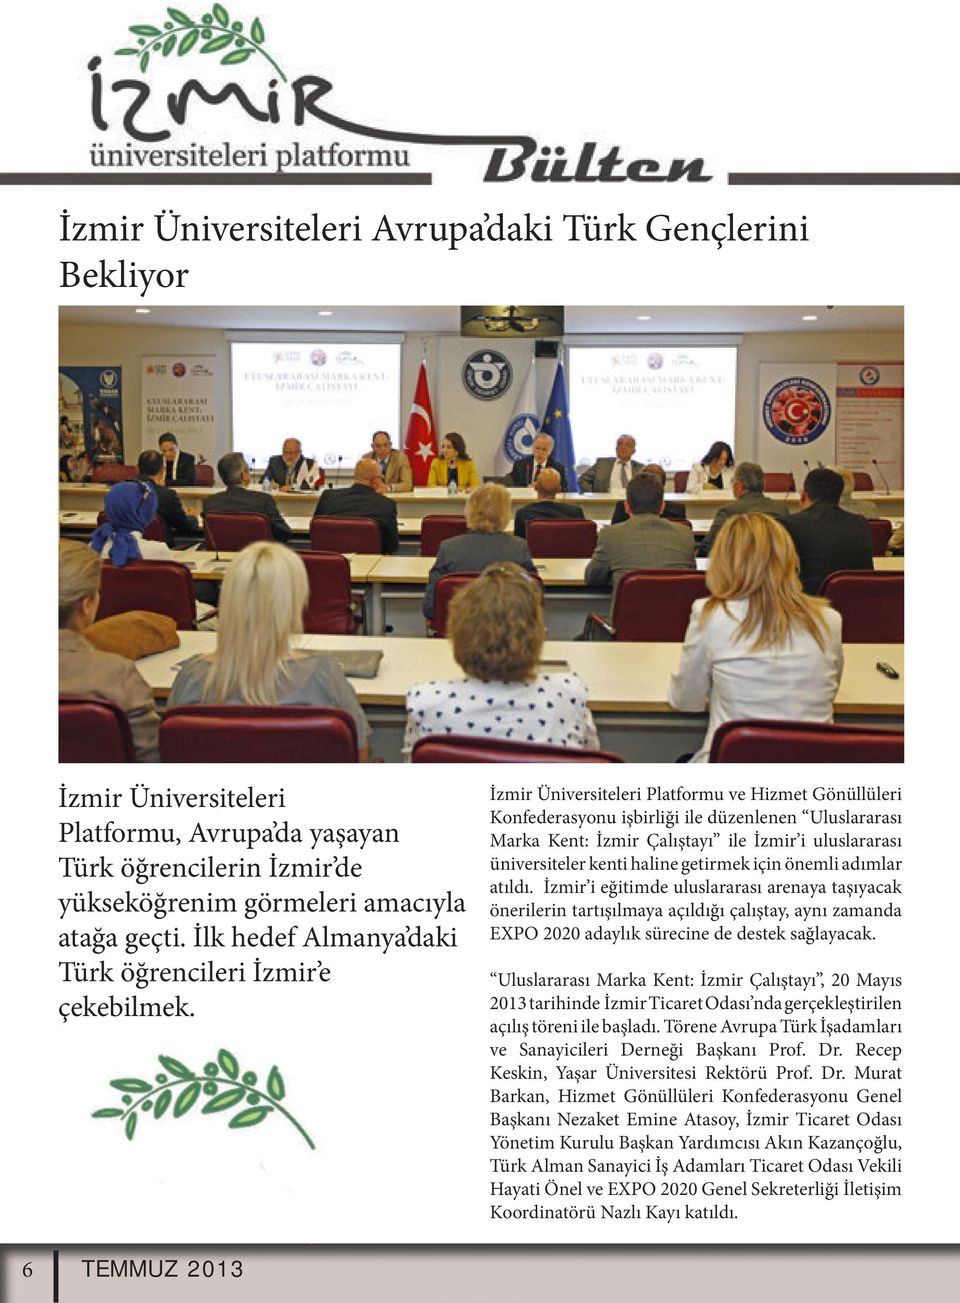 İzmir Üniversiteleri Platformu ve Hizmet Gönüllüleri Konfederasyonu işbirliği ile düzenlenen Uluslararası Marka Kent: İzmir Çalıştayı ile İzmir i uluslararası üniversiteler kenti haline getirmek için